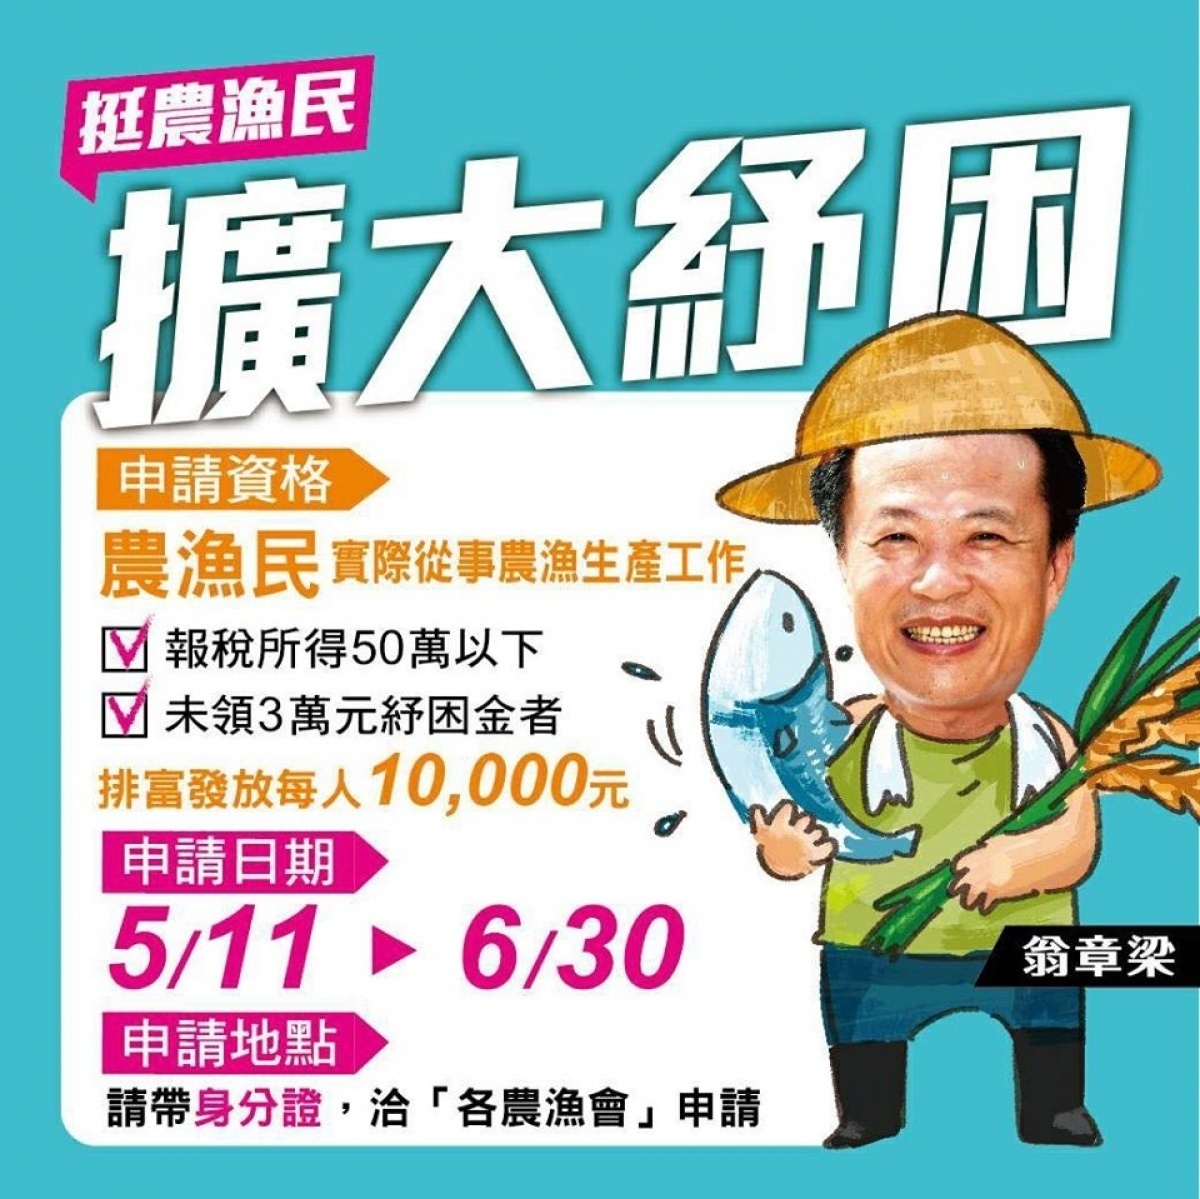 農漁民生活補貼5 11 6 30受理申請 台灣好新聞taiwanhot Net